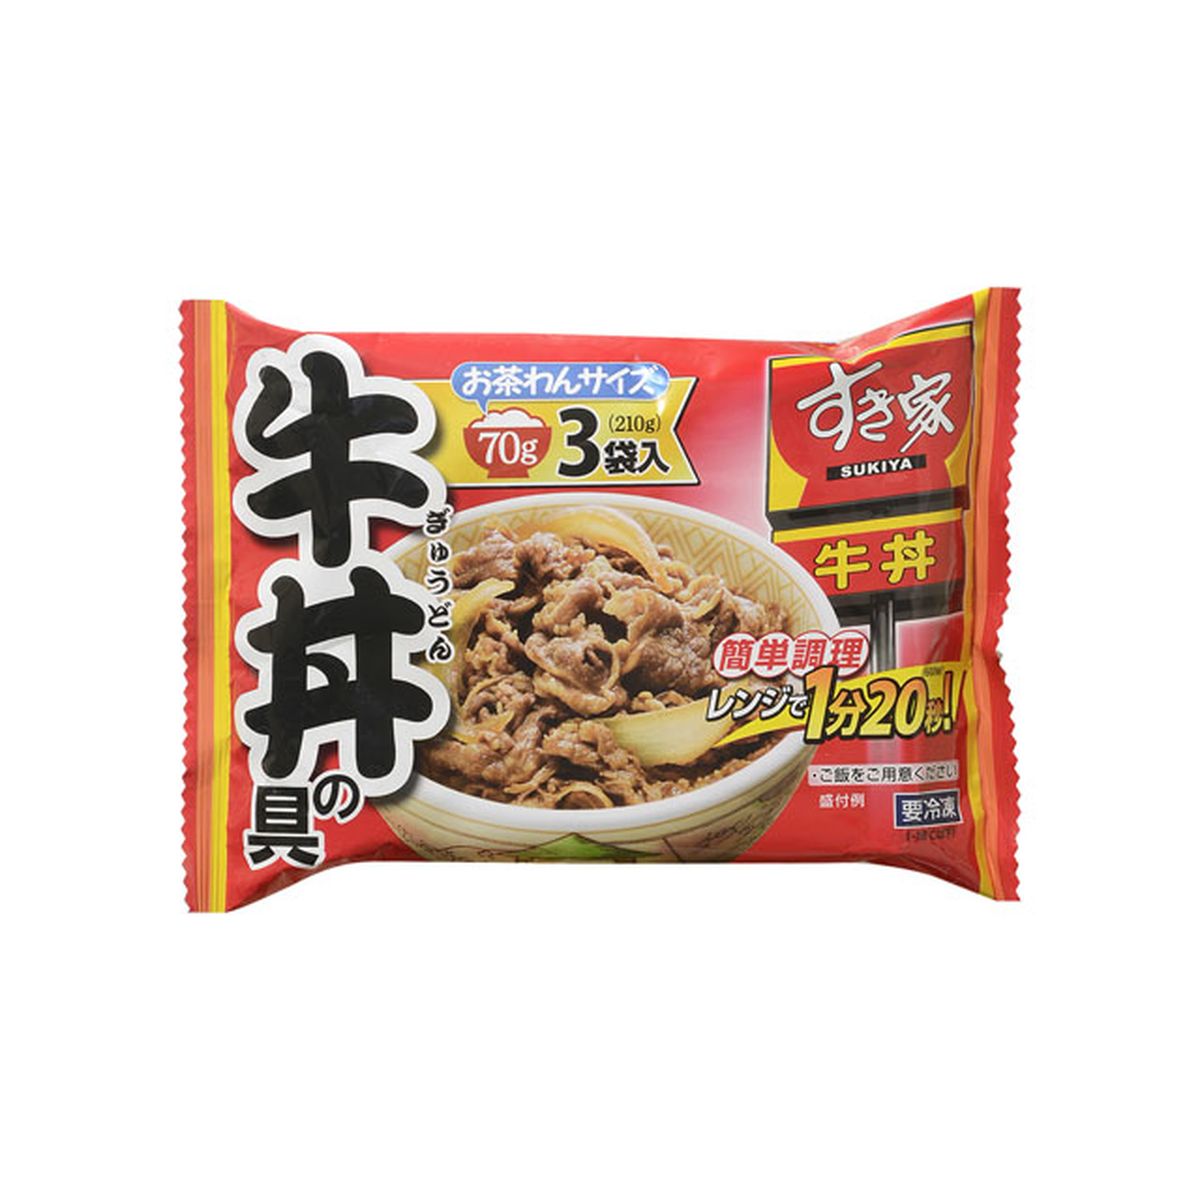 【冷凍】トロナ すき家 牛丼の具 70g×3×10